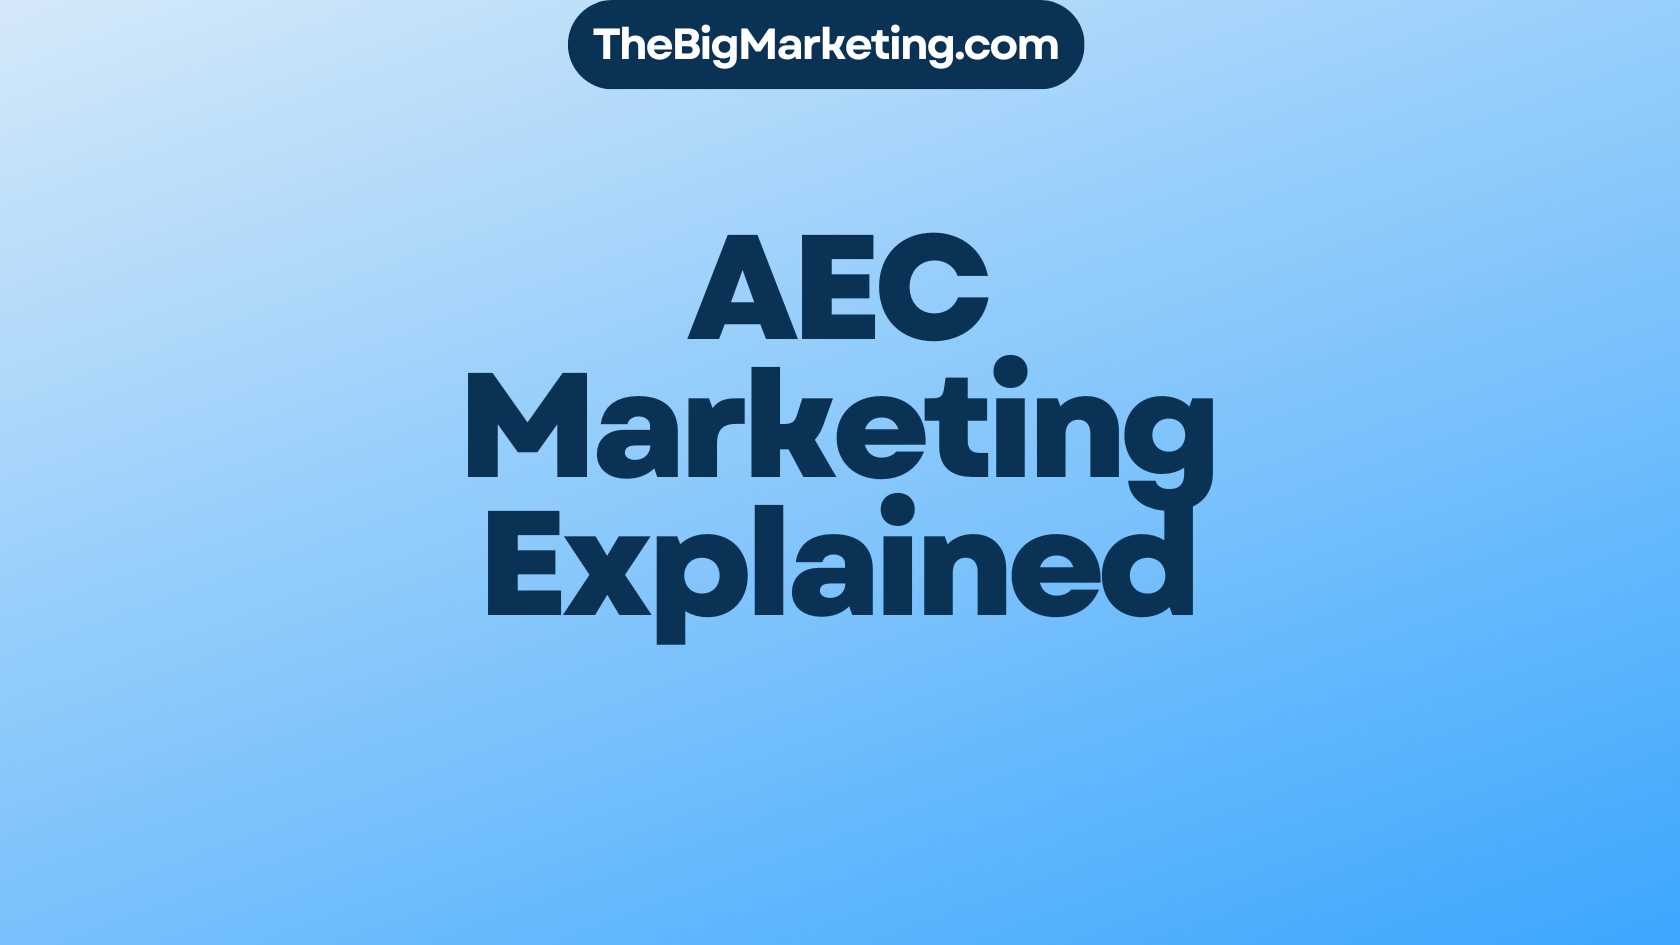 AEC Marketing Explained